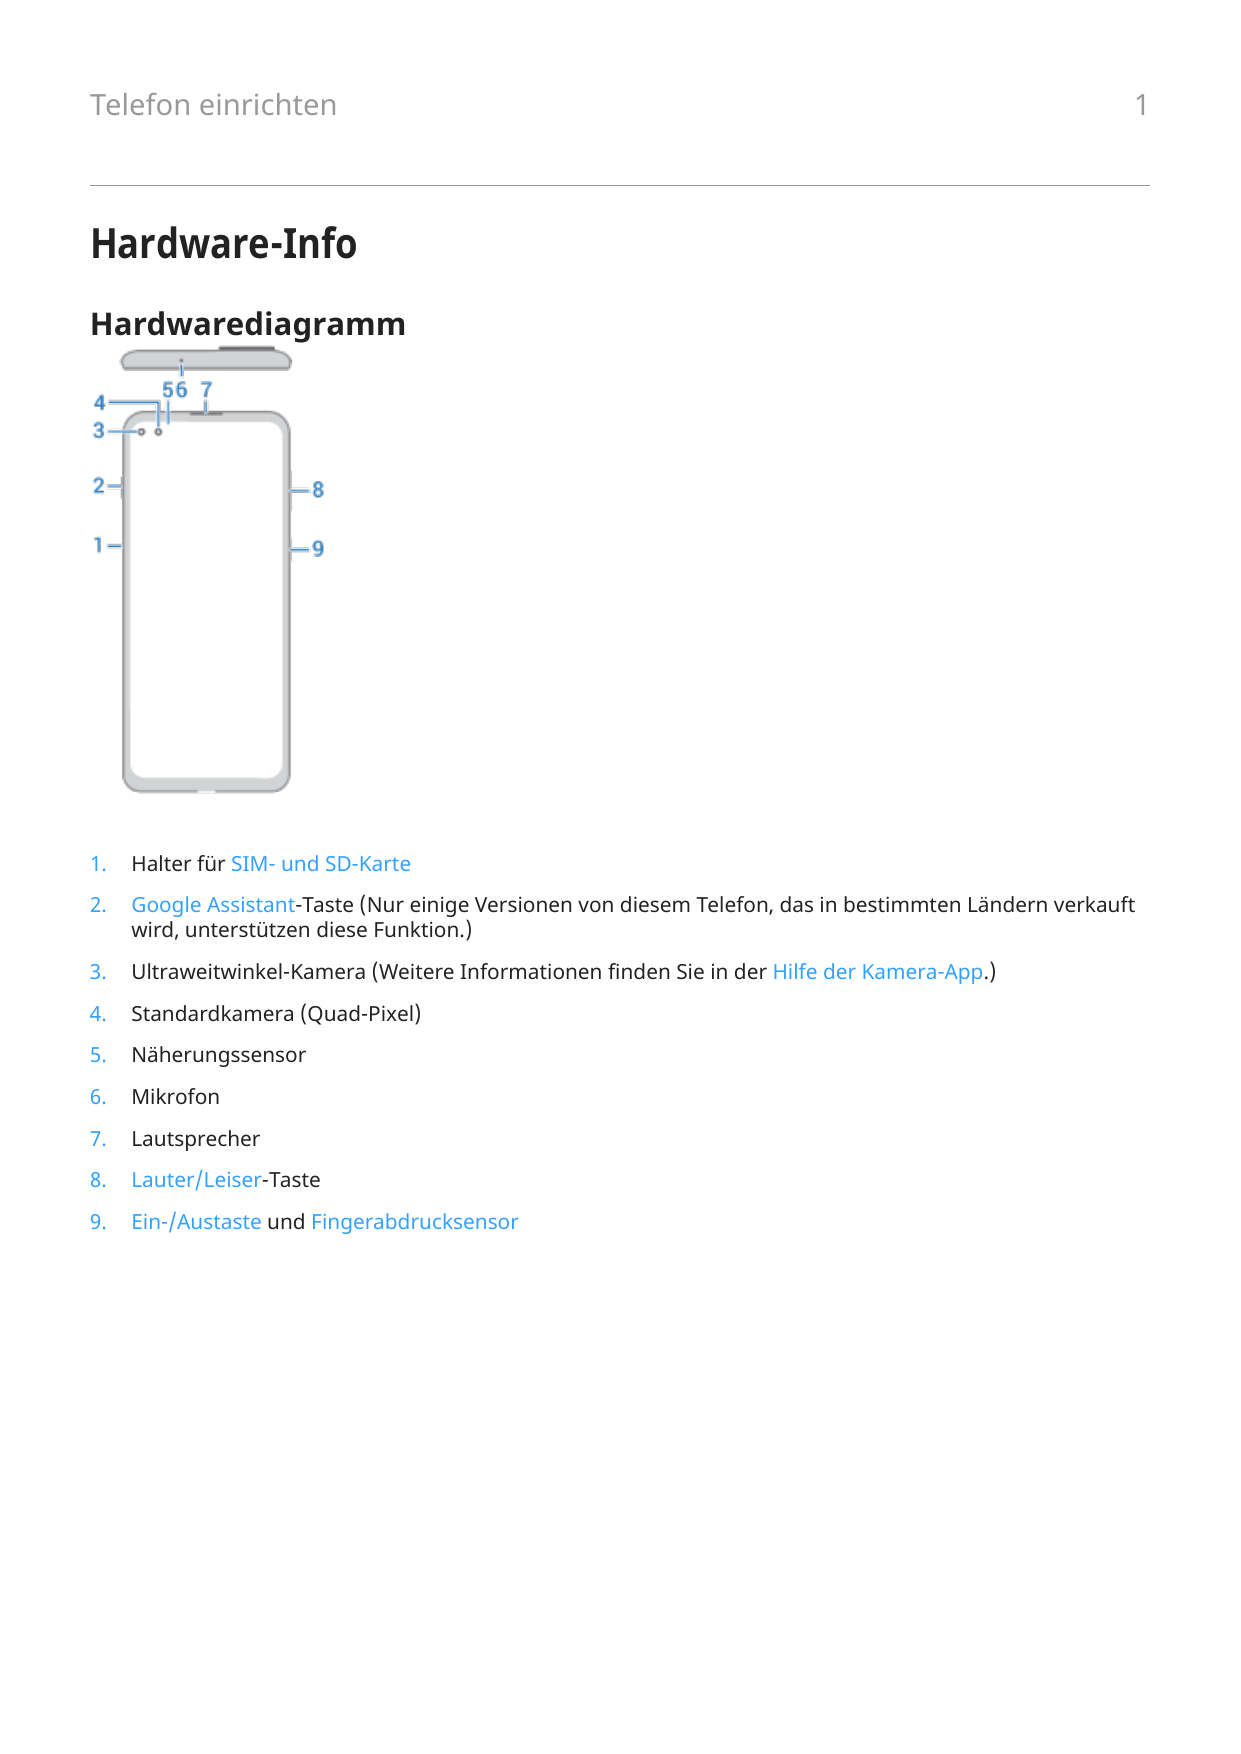 Telefon einrichten1Hardware-InfoHardwarediagramm1.Halter für SIM- und SD-Karte2.Google Assistant-Taste (Nur einige Versionen von